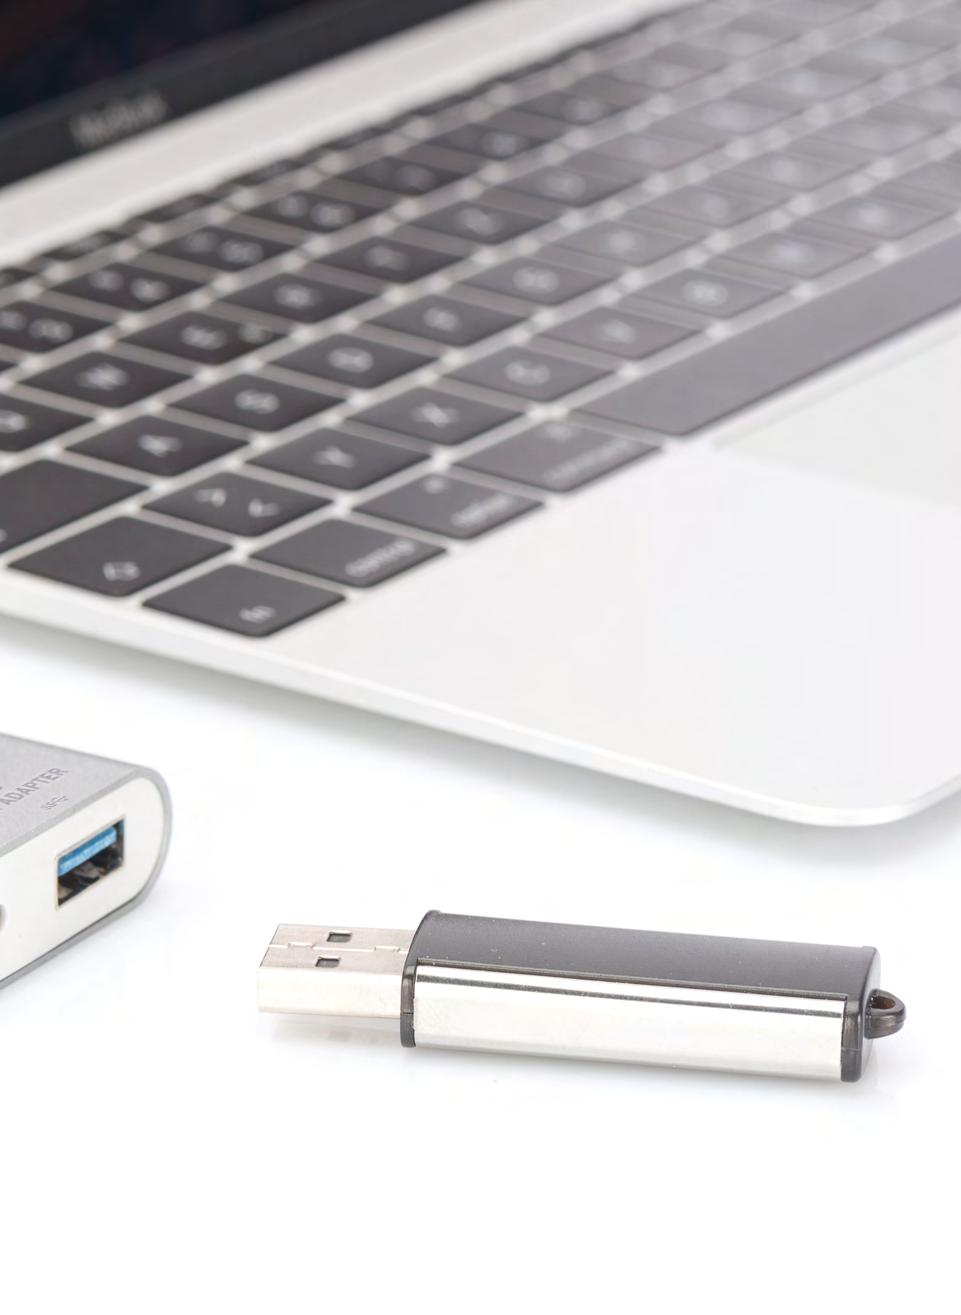 USB Typ C - der neue Standard der USB-Stecker der Zukunft Der USB Typ C Stecker erleichtert in vielerlei Hinsicht die Handhabung von Kabeln.